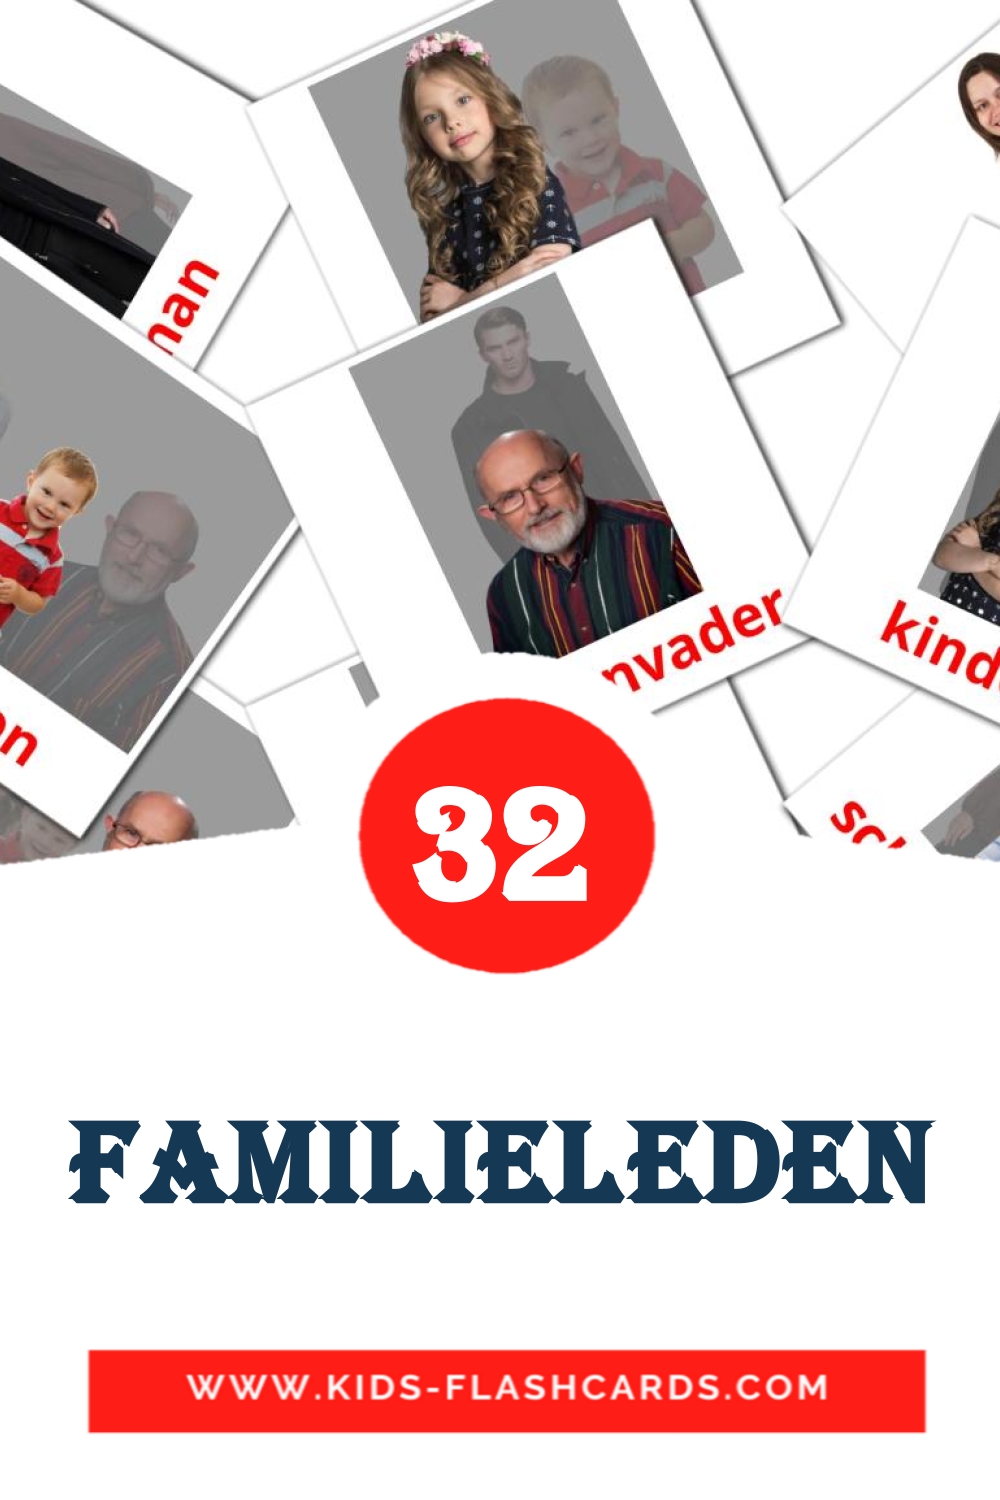 Familieleden на нидерландcком для Детского Сада (32 карточки)